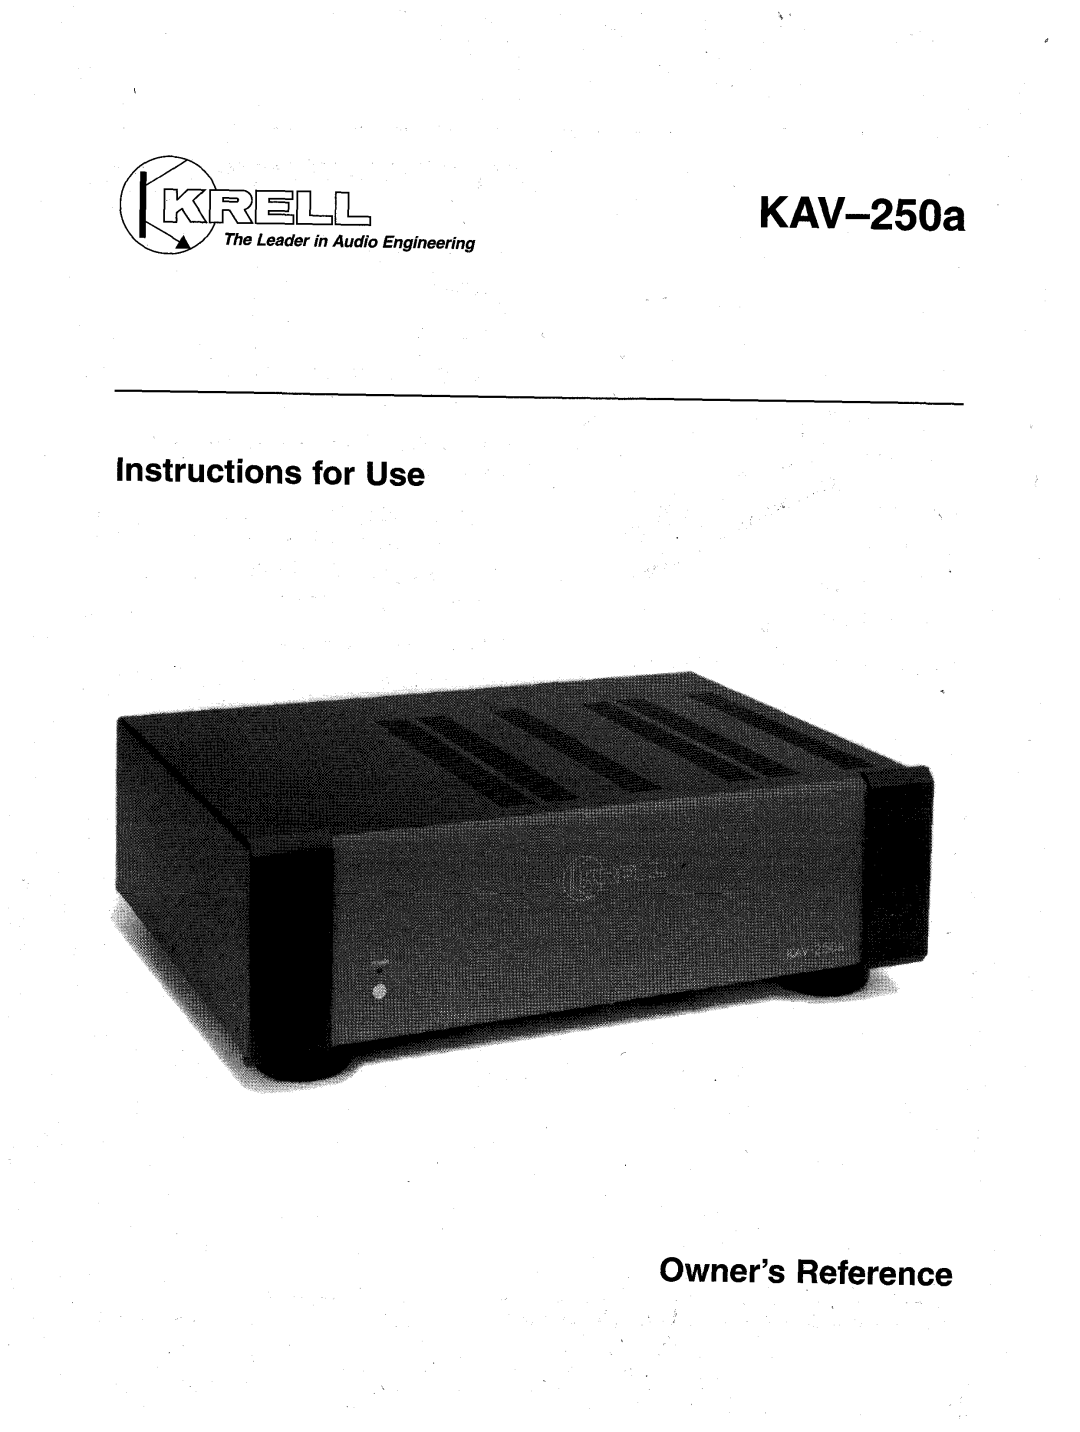 Krell Industries KAV-250a manual AVH-eO~, s,~au~o aoua~atal l, suo!~onJ~SUl Jo# eSll, ~.aq, Japeau, o/pn, R..I~u!Jaau!/~u 